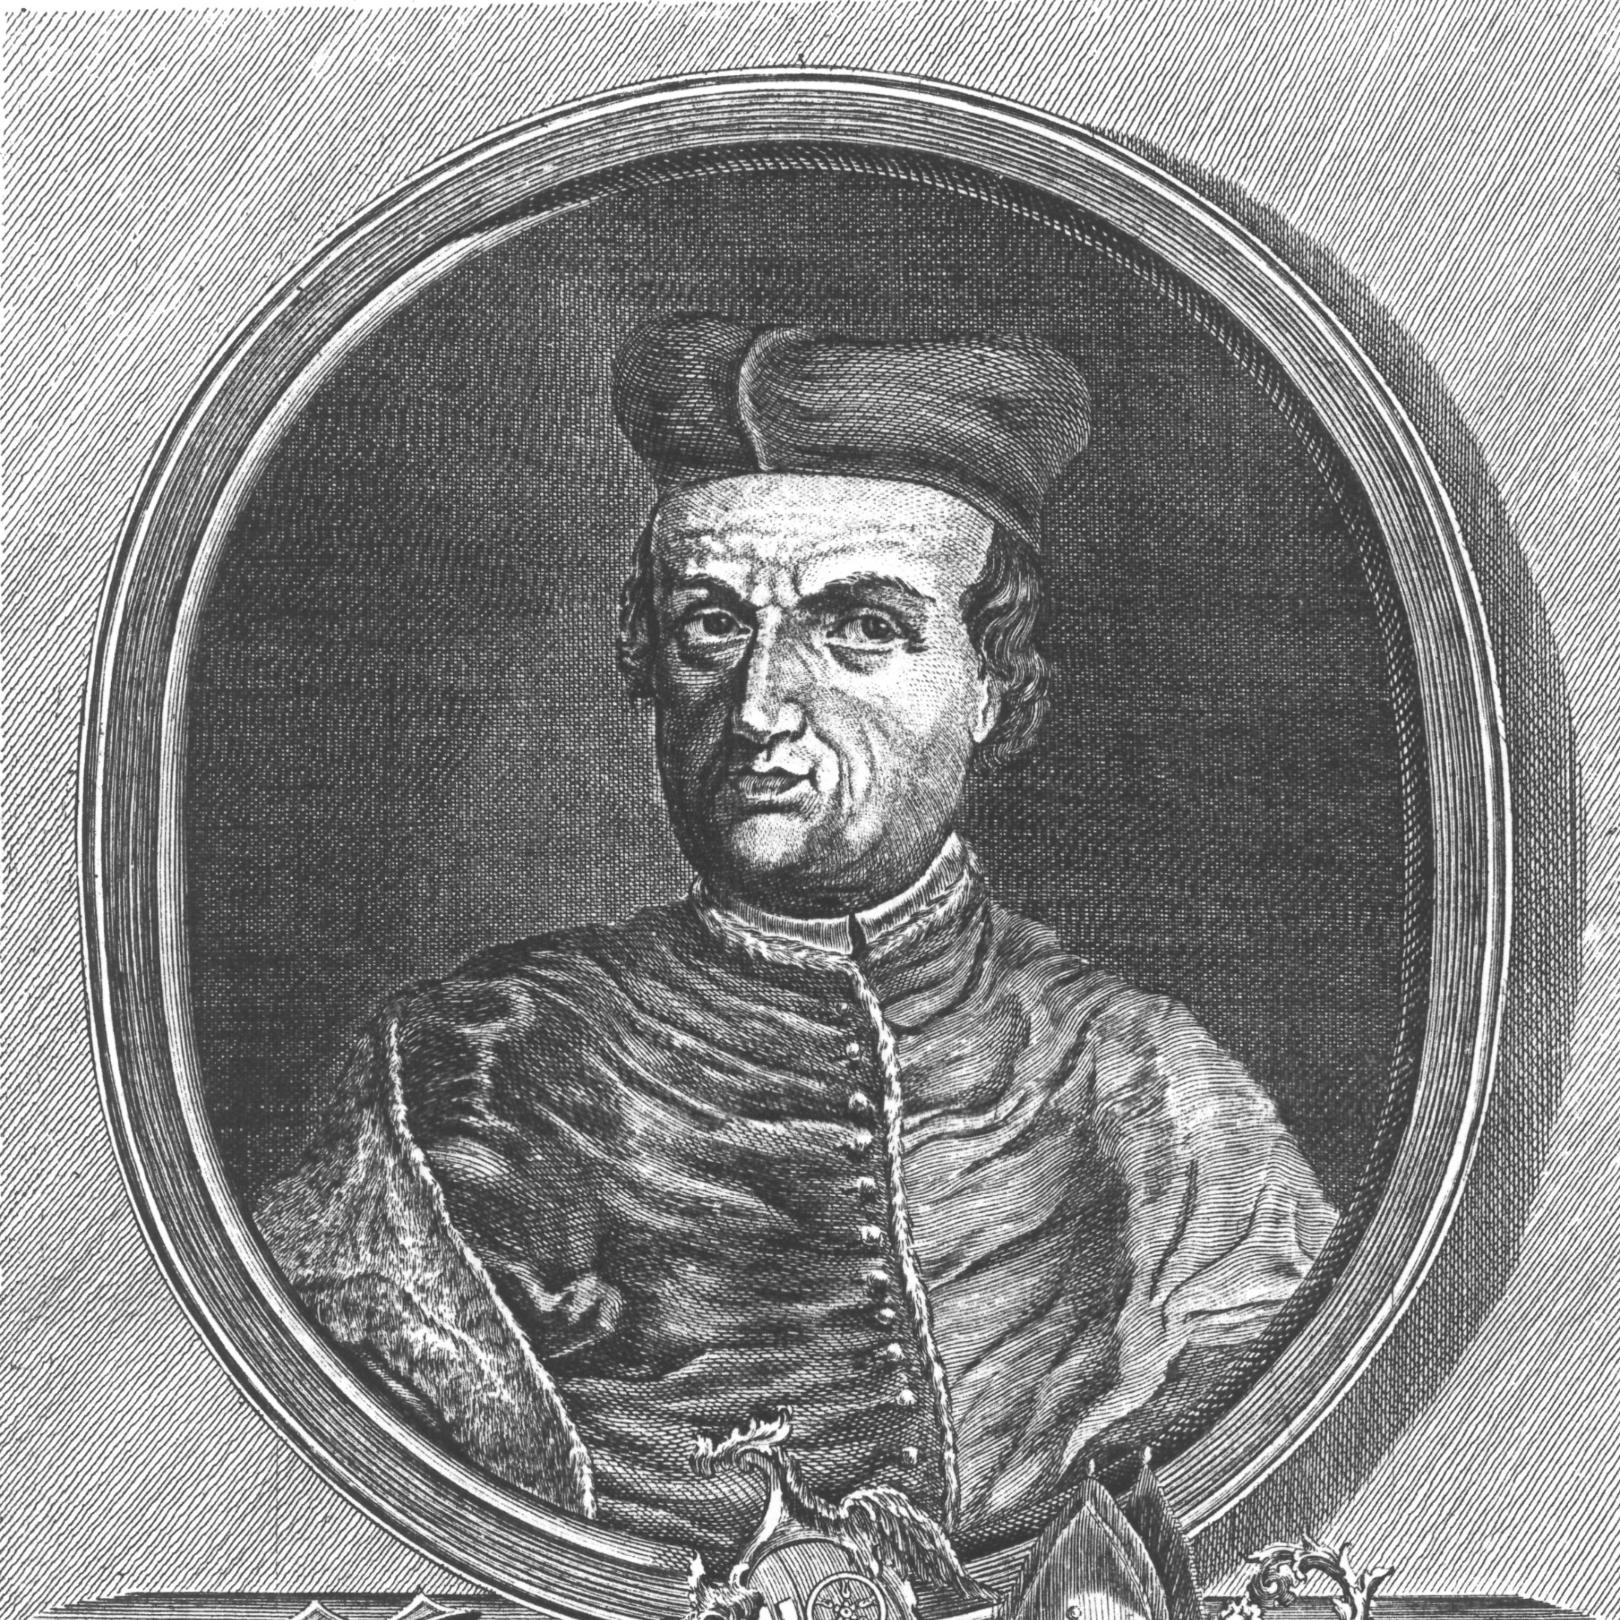 Konrad II. von Weinsberg, gezeichnet ca. 1774 (c) Wilhelm Christian Rücker / IMKG